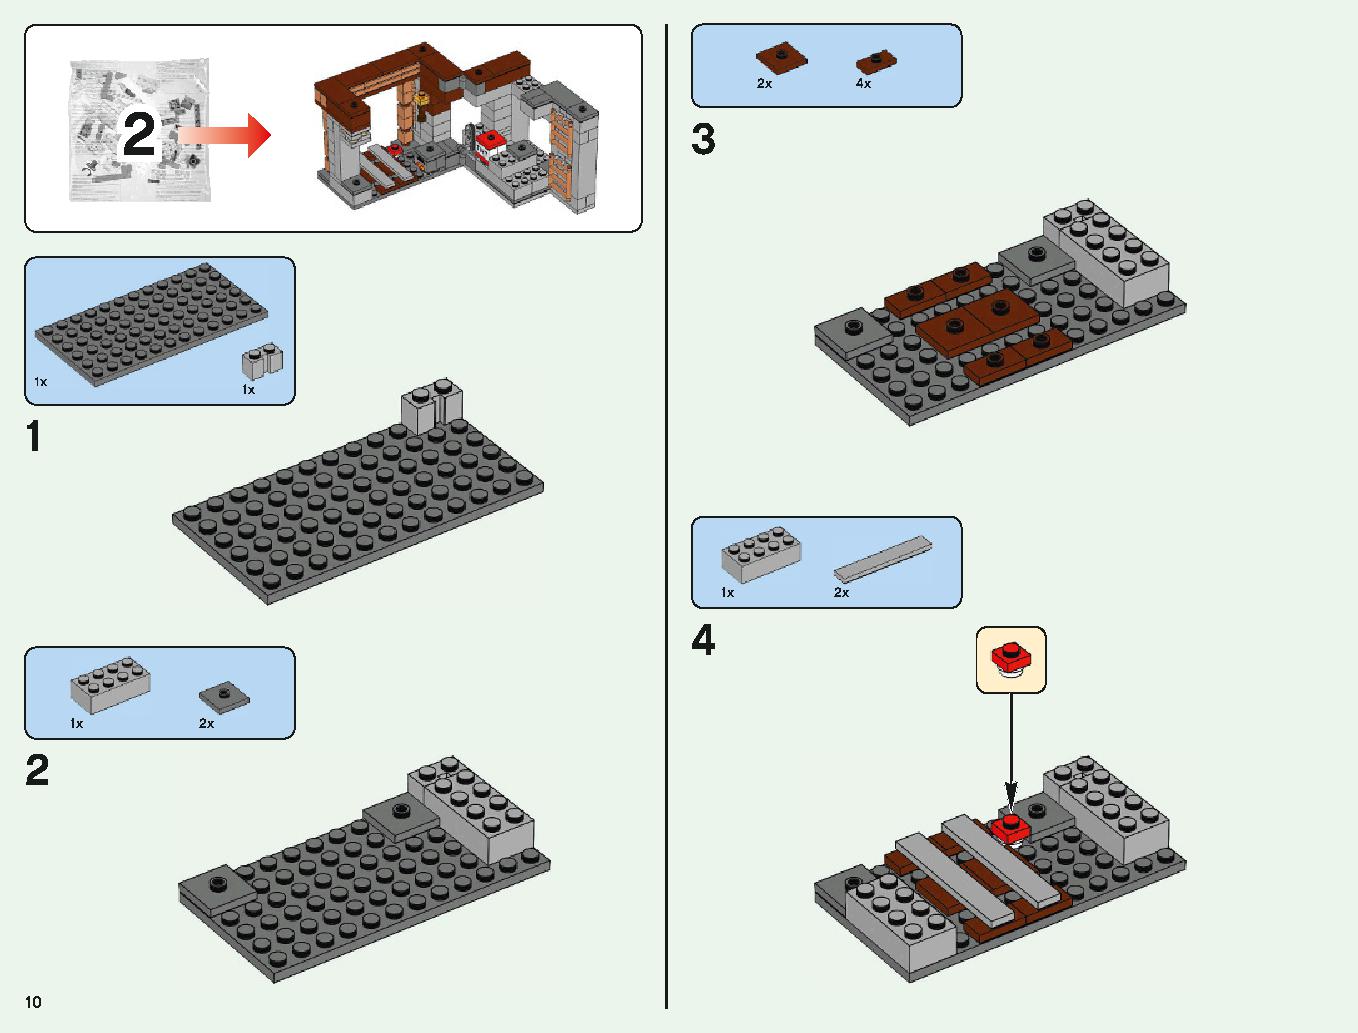 ベッドロックの冒険 21147 レゴの商品情報 レゴの説明書・組立方法 10 page